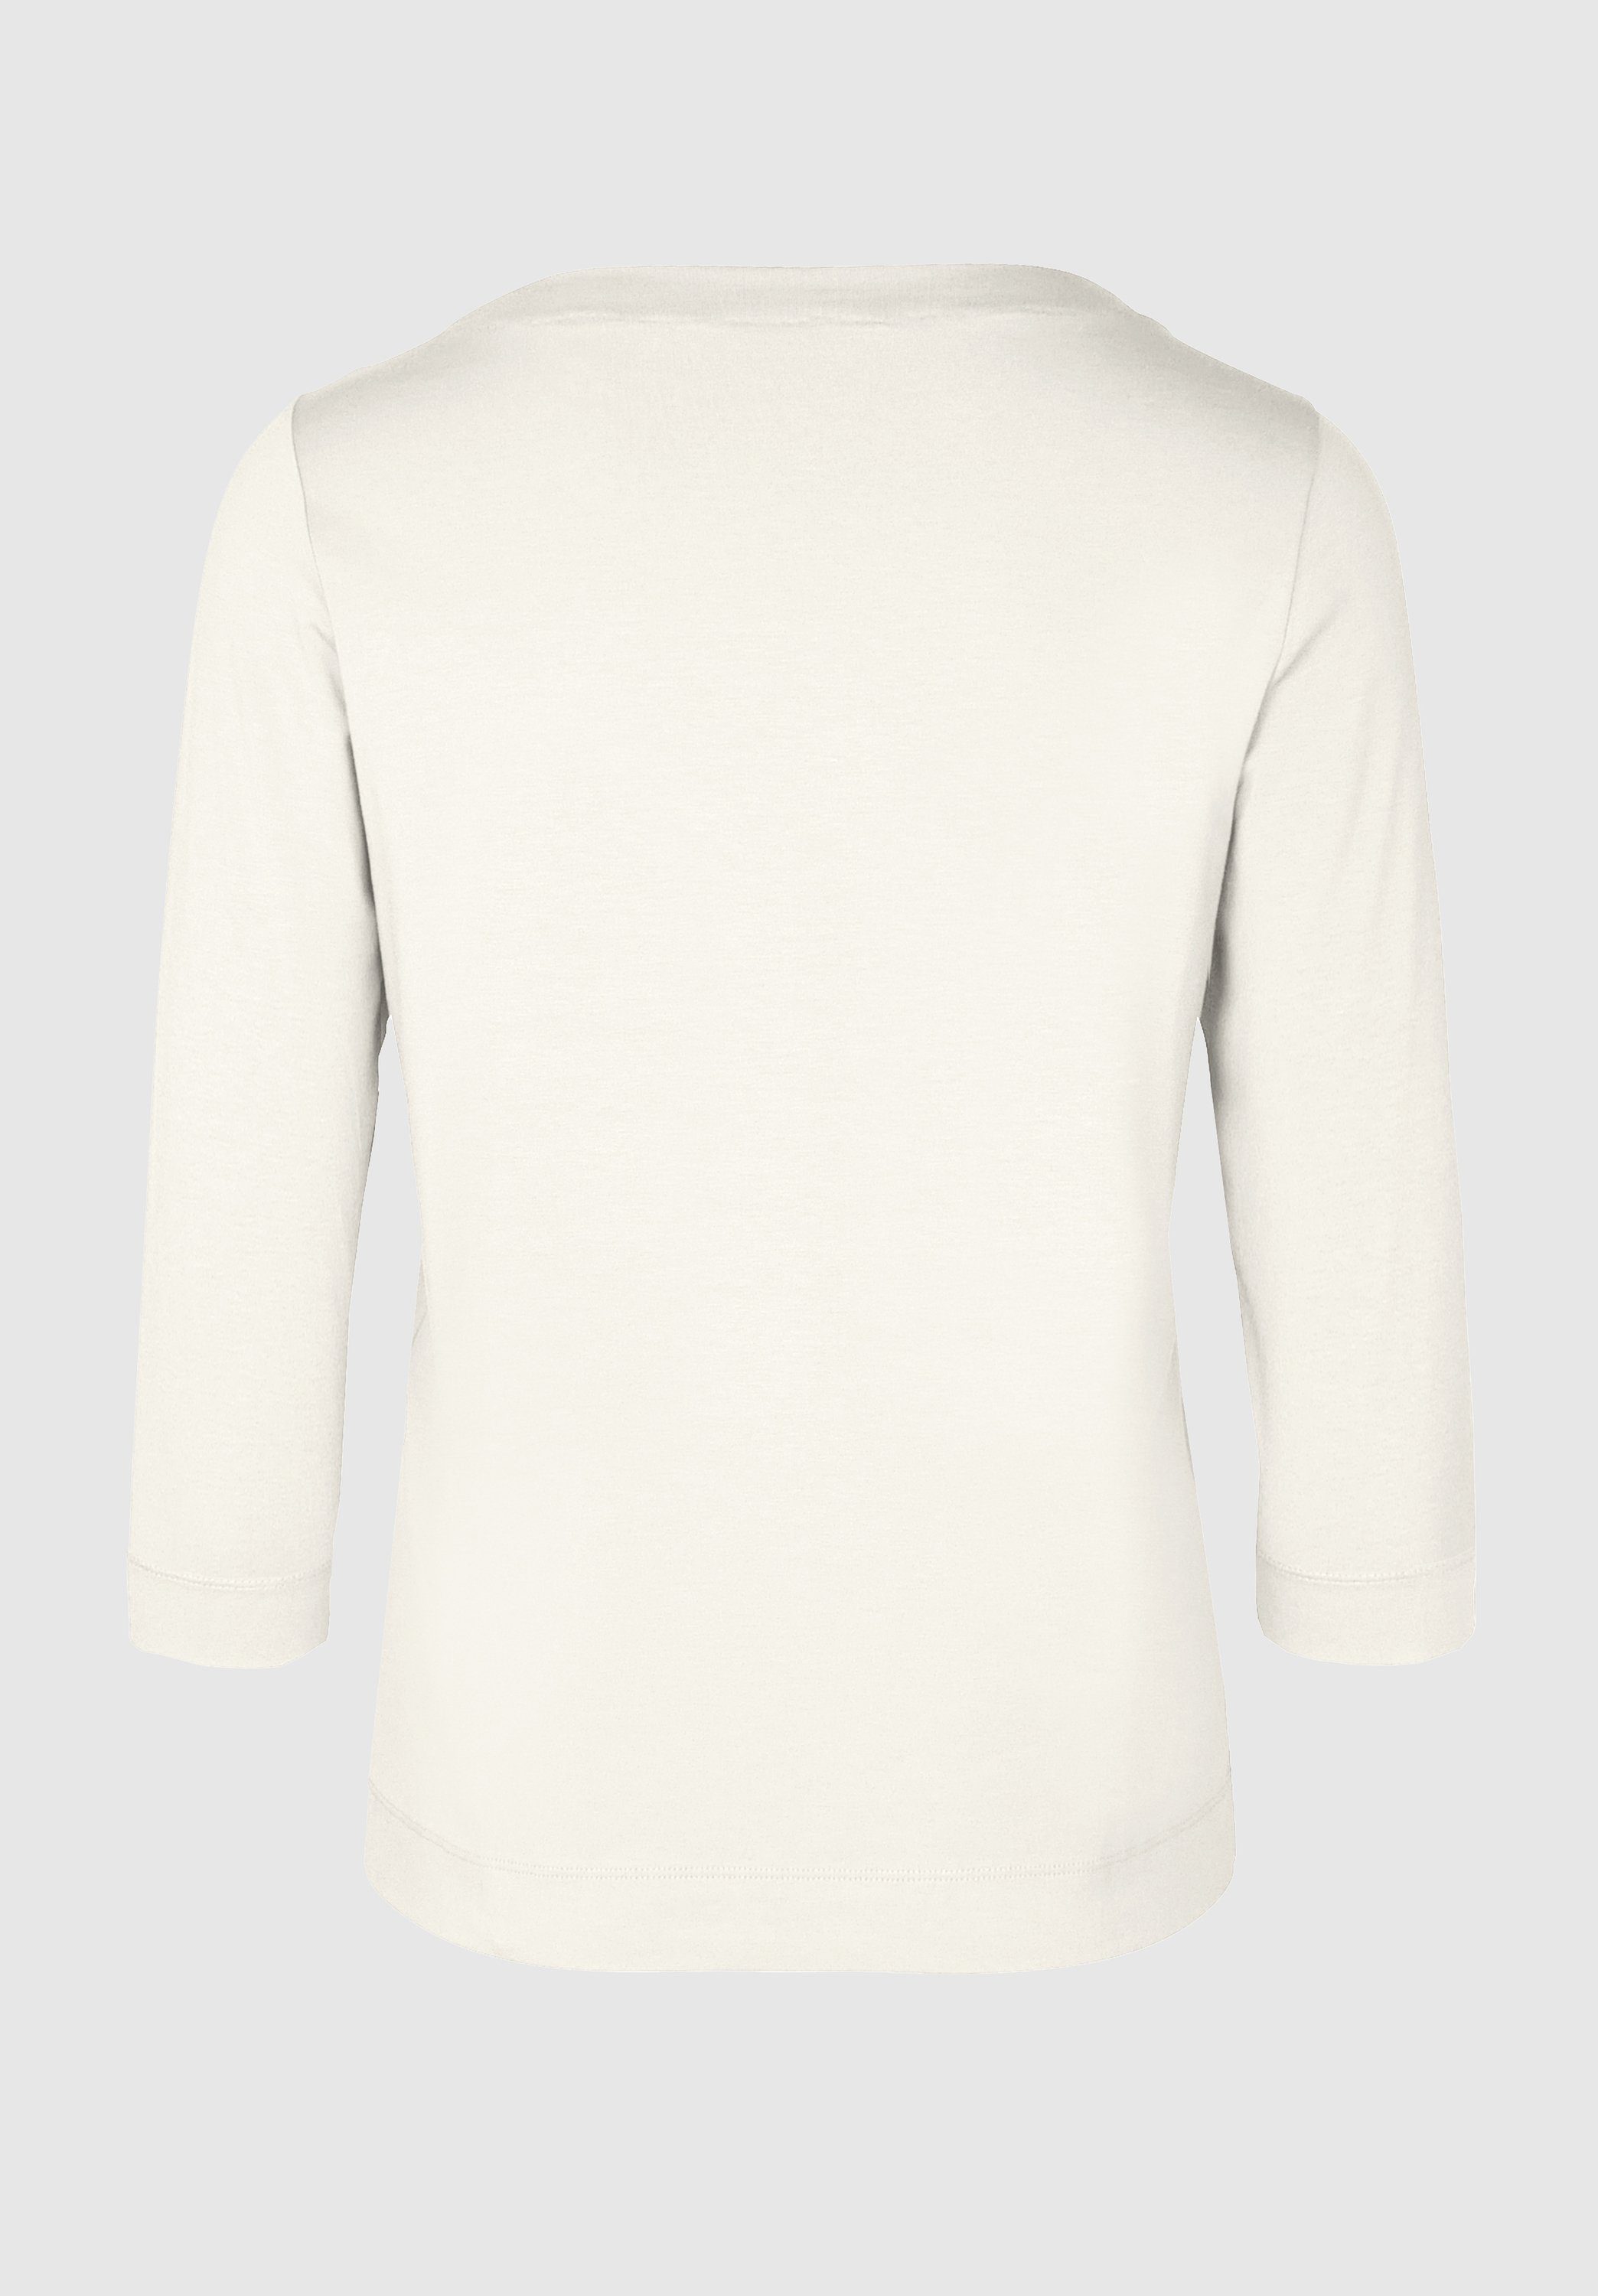 bianca 3/4-Arm-Shirt DIELLA in modernem und Trendfarben ivory angesagten Look